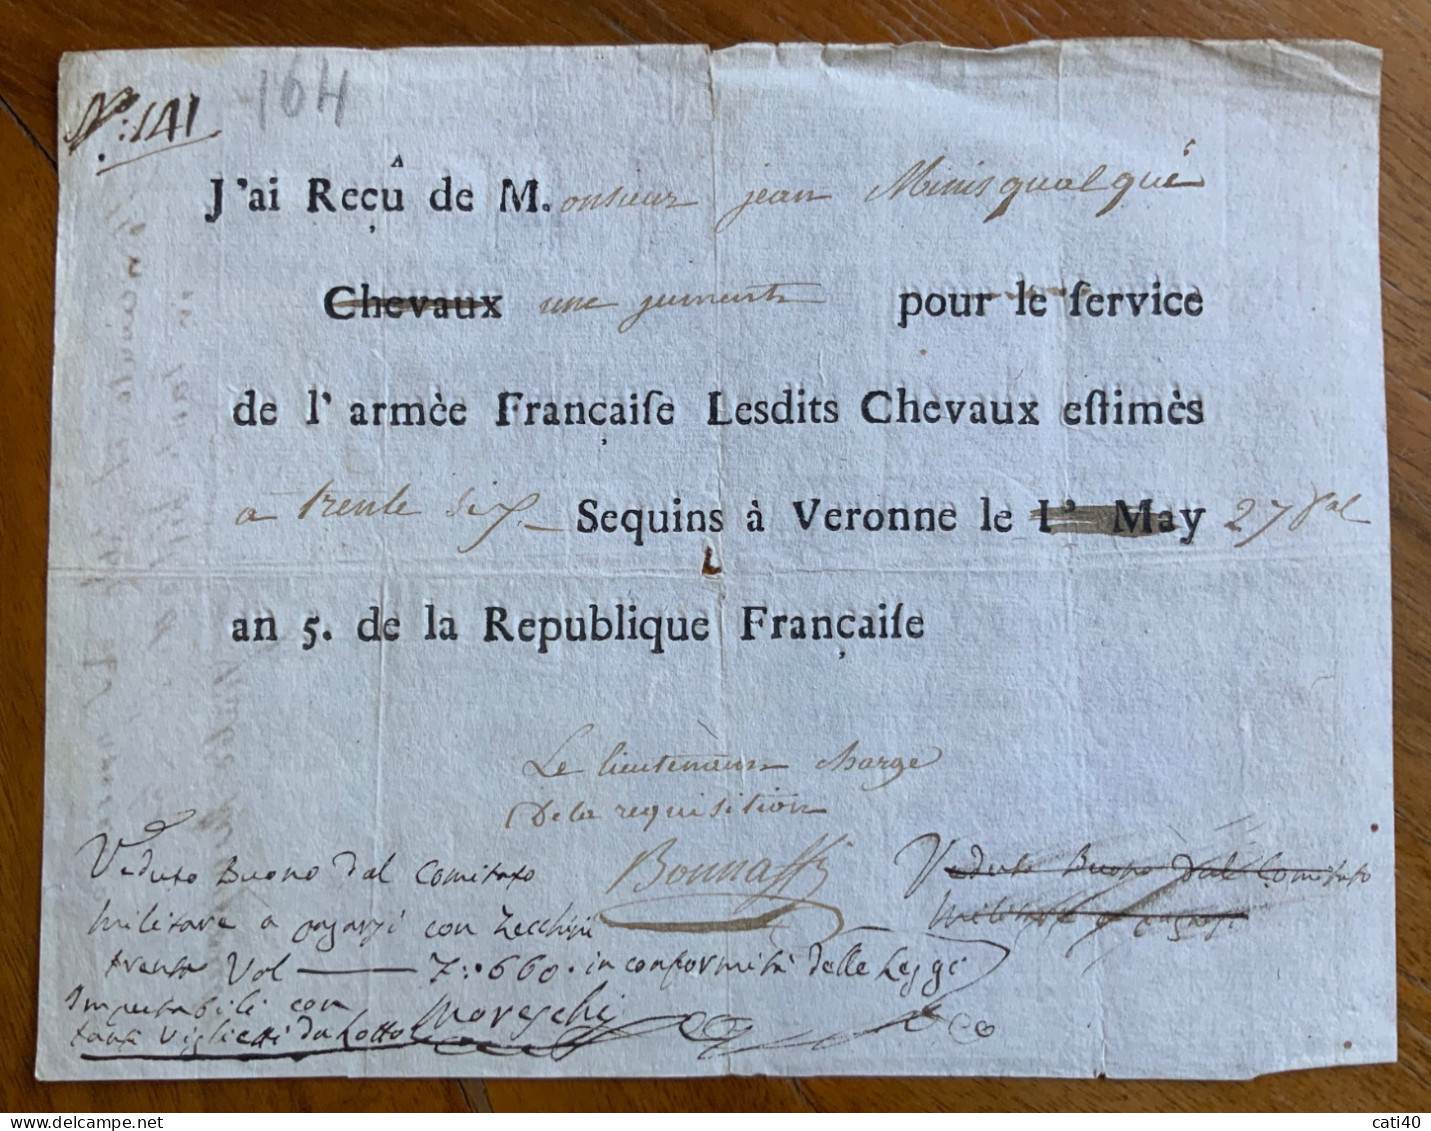 ARMEE FRANCAISE - BUONO PER SERVIZIO  COMITATO DA PAGARSI CON ZECCHINI 7,660 ...27 MAY An.5 De La REPUBLIQUE FRANCAISE.. - Historical Documents